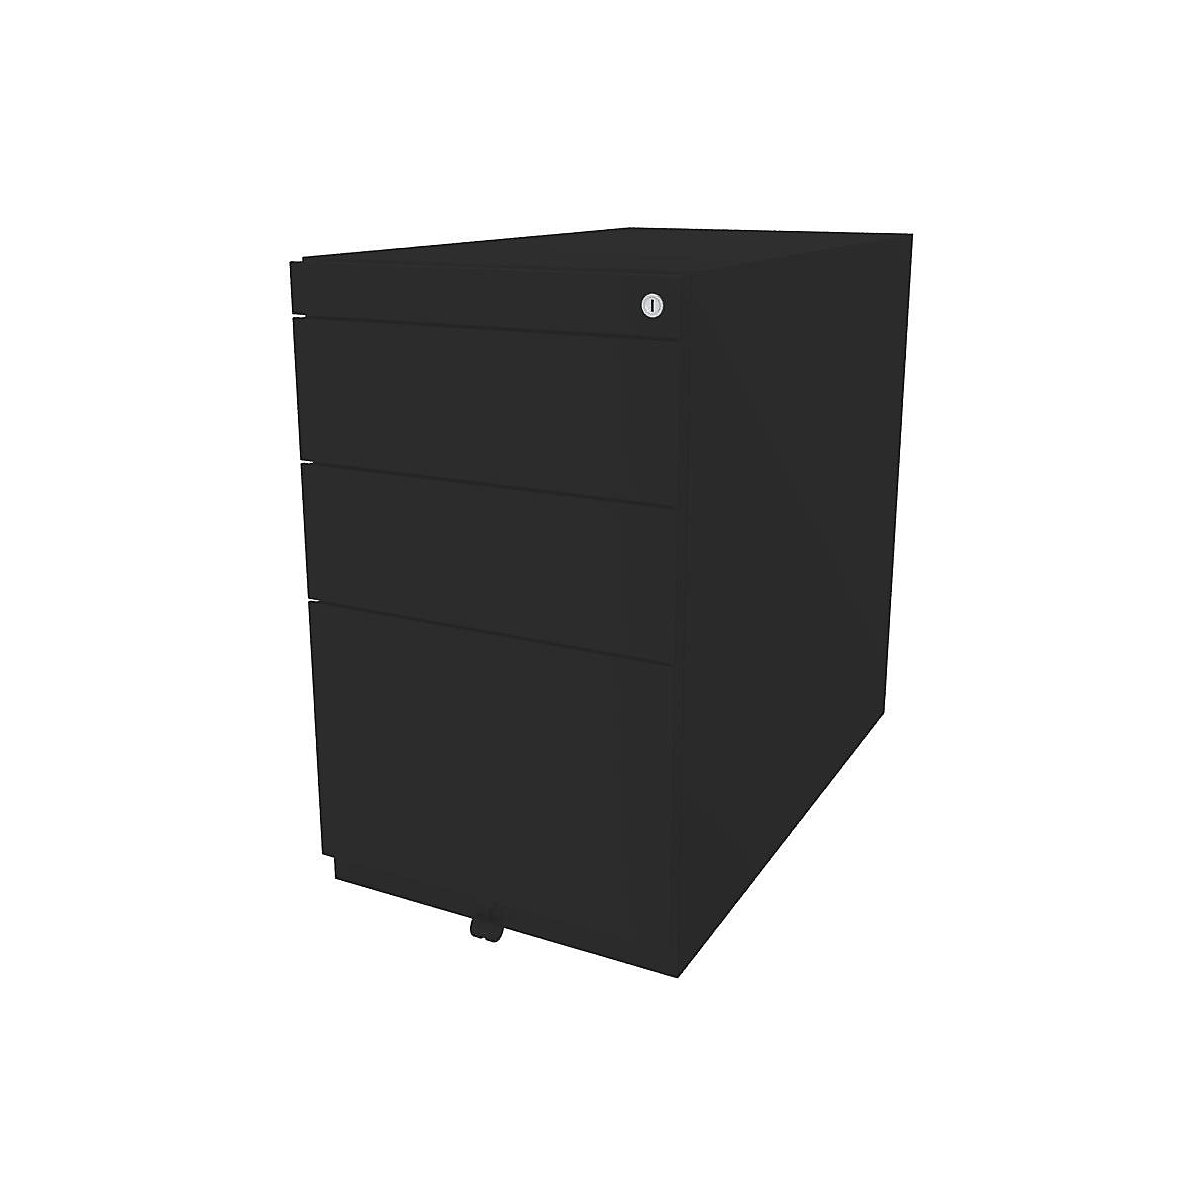 BISLEY Standcontainer Note™, mit 2 Universalschubladen, 1 Hängeregistratur, ohne Top, Tiefe 775 mm, schwarz